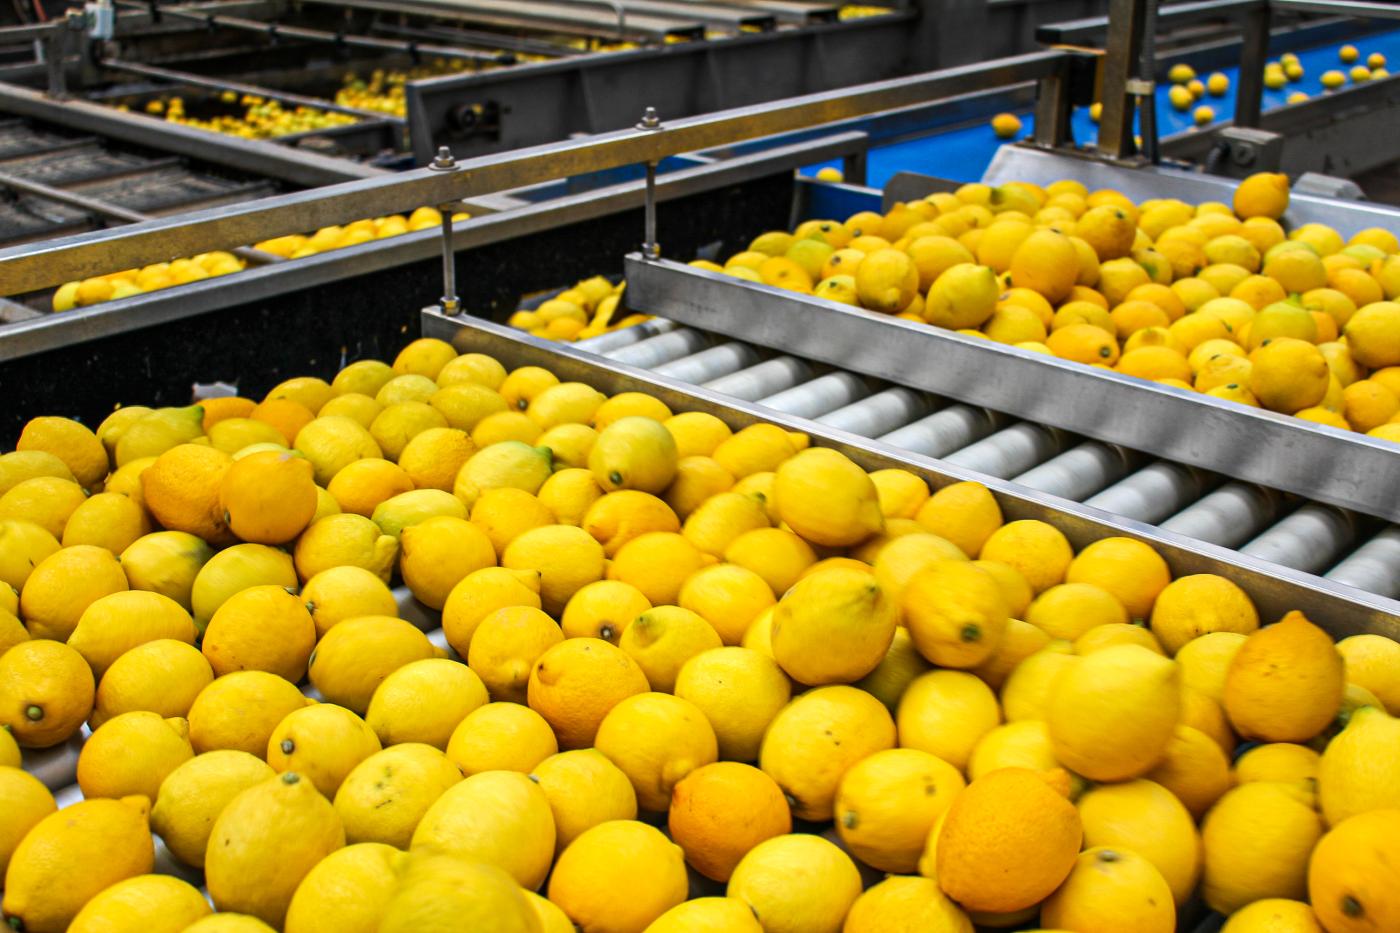 Zitronen nach der Ernte am Förderband